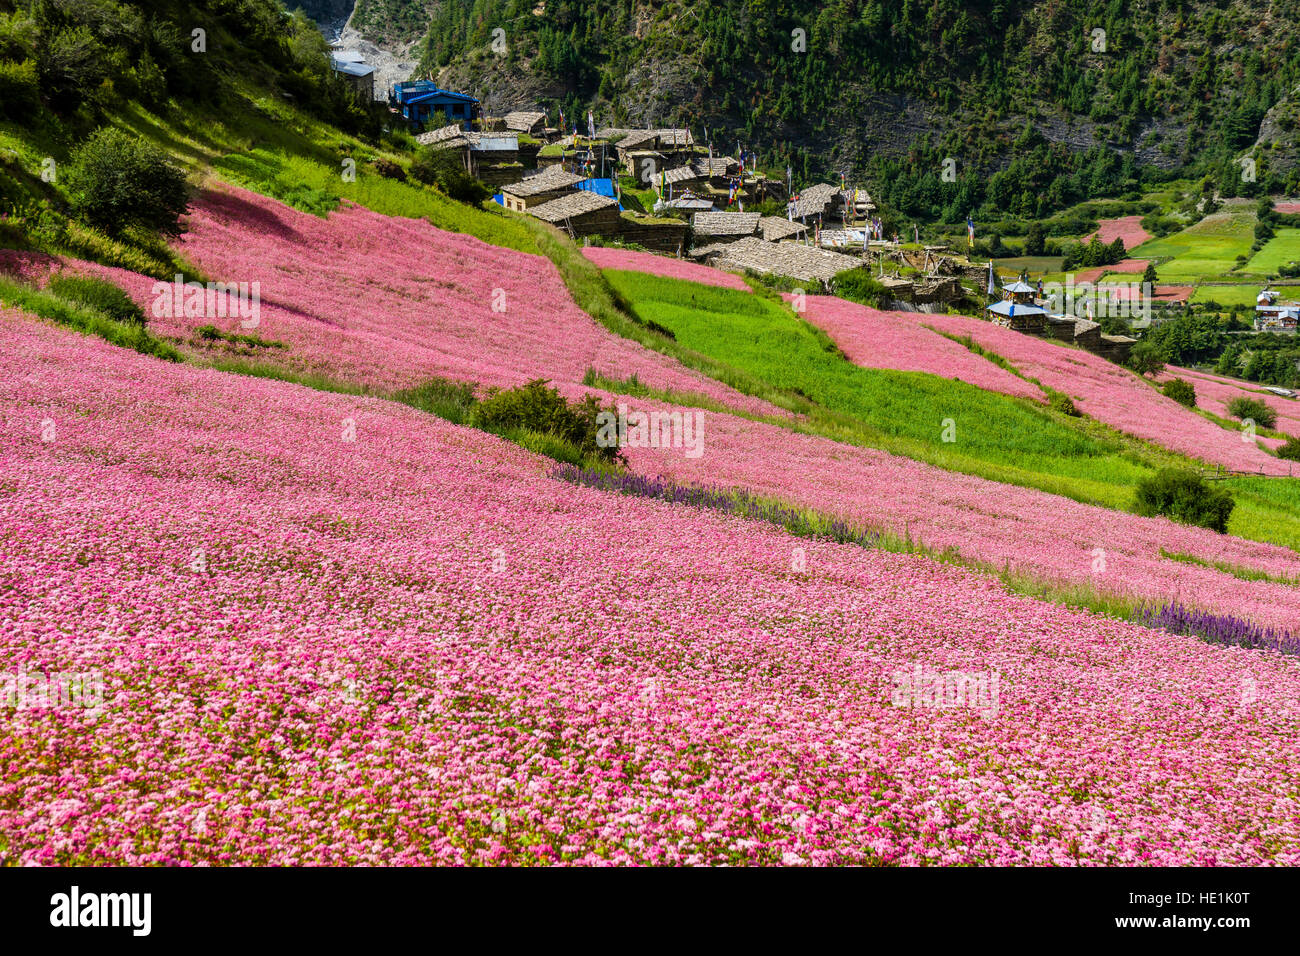 Il paesaggio agricolo con rosa di campi di grano saraceno in fiore al di sopra del villaggio pisang superiore e la parte superiore della valle marsyangdi Foto Stock